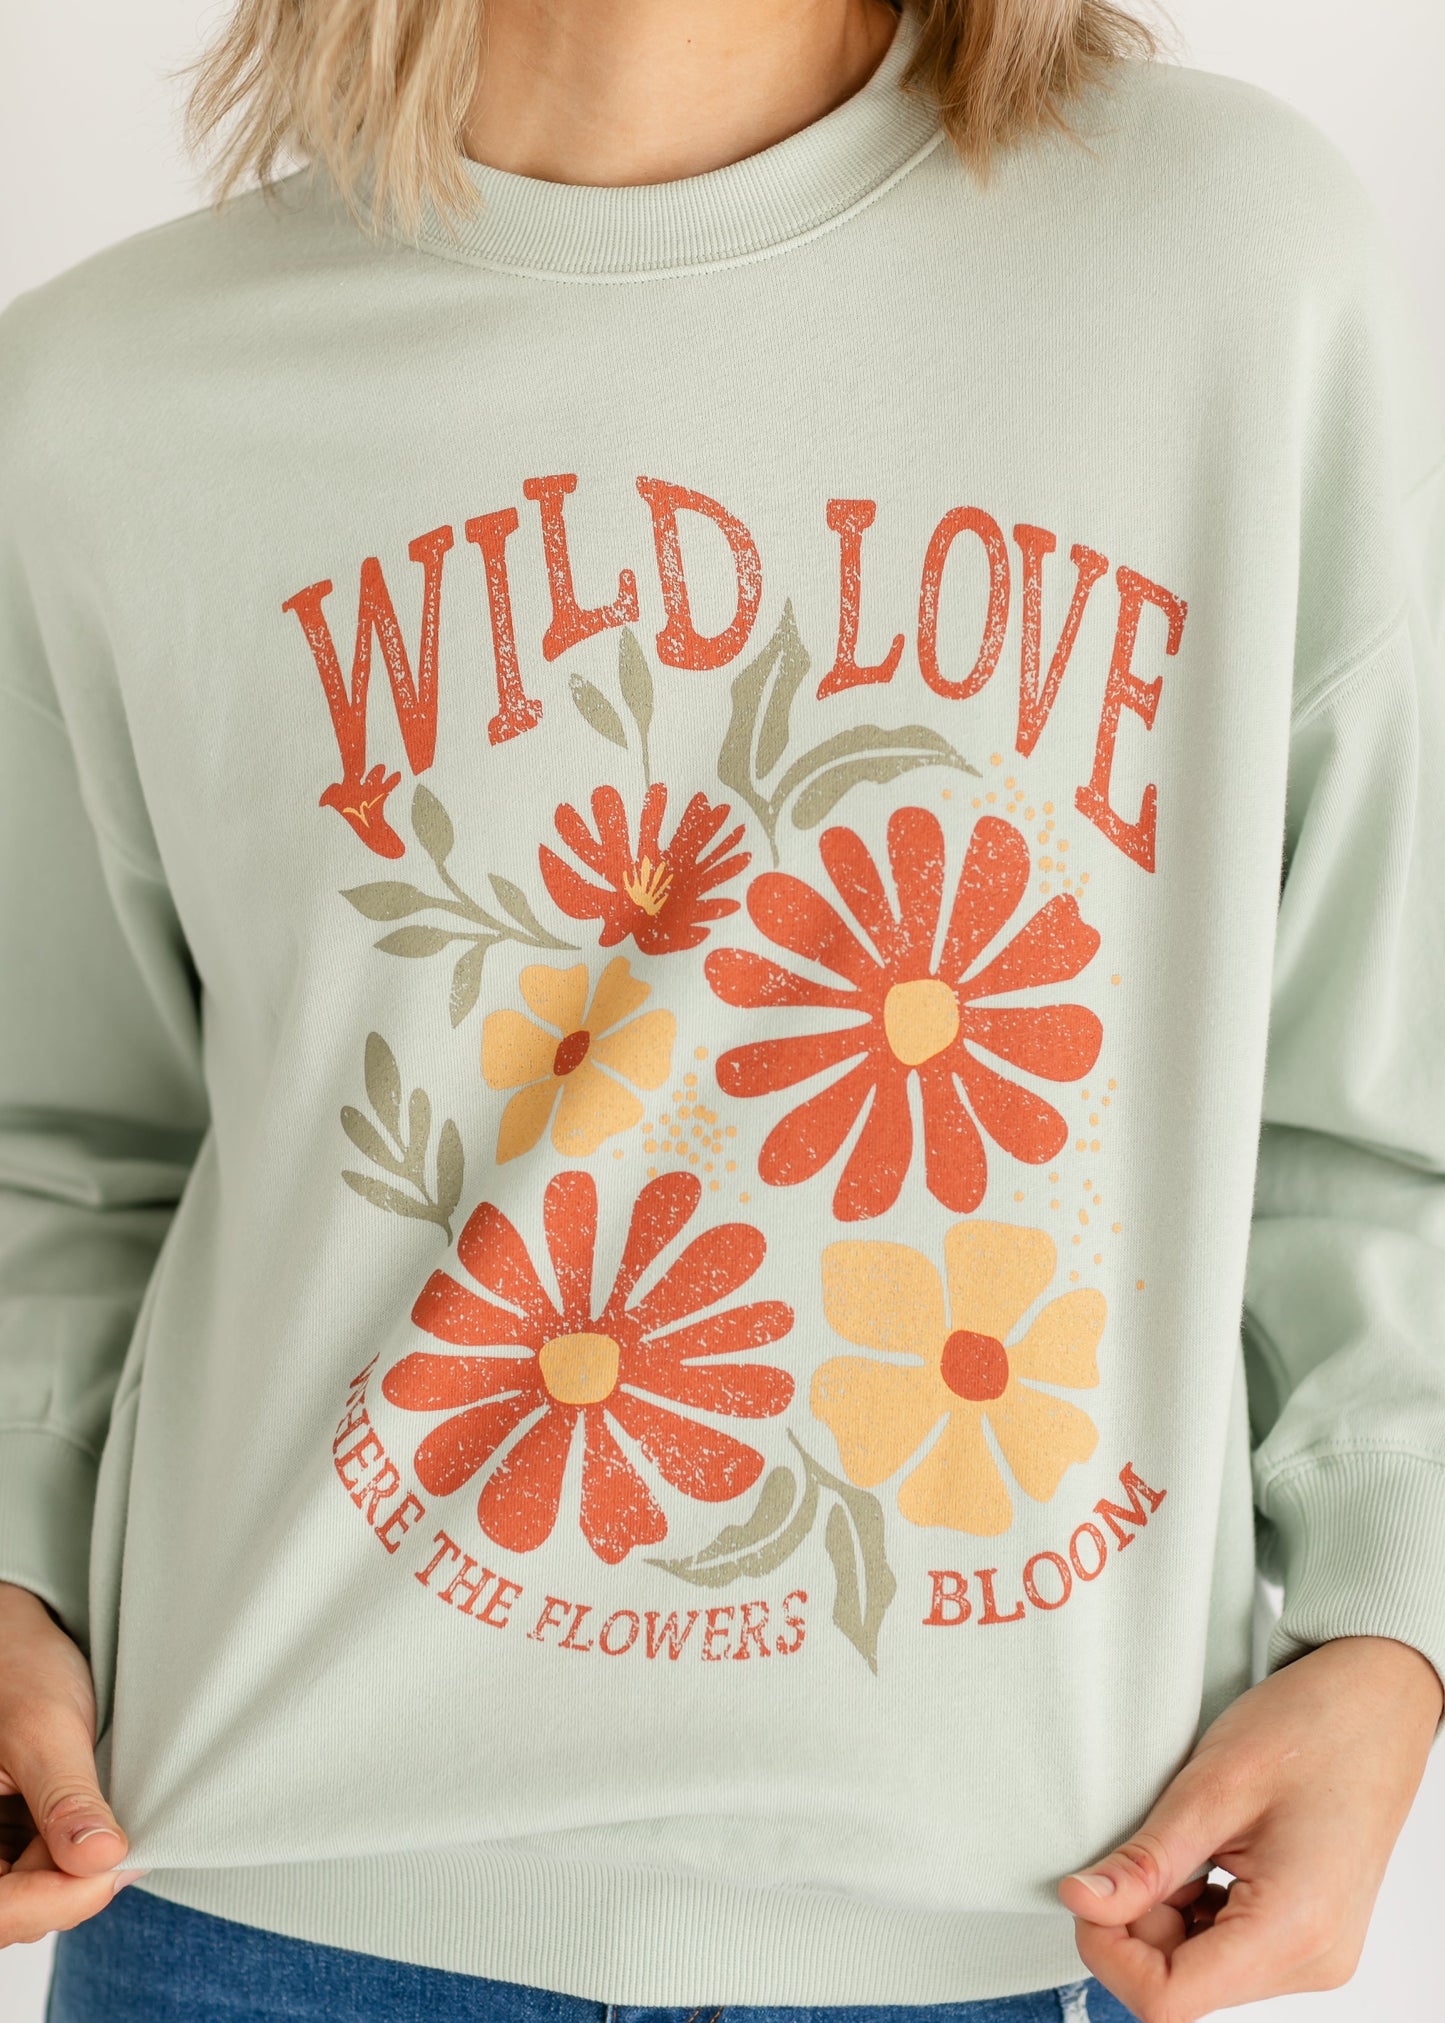 Inherit Wild Love Floral Graphic Crewneck Sweatshirt FF Tops